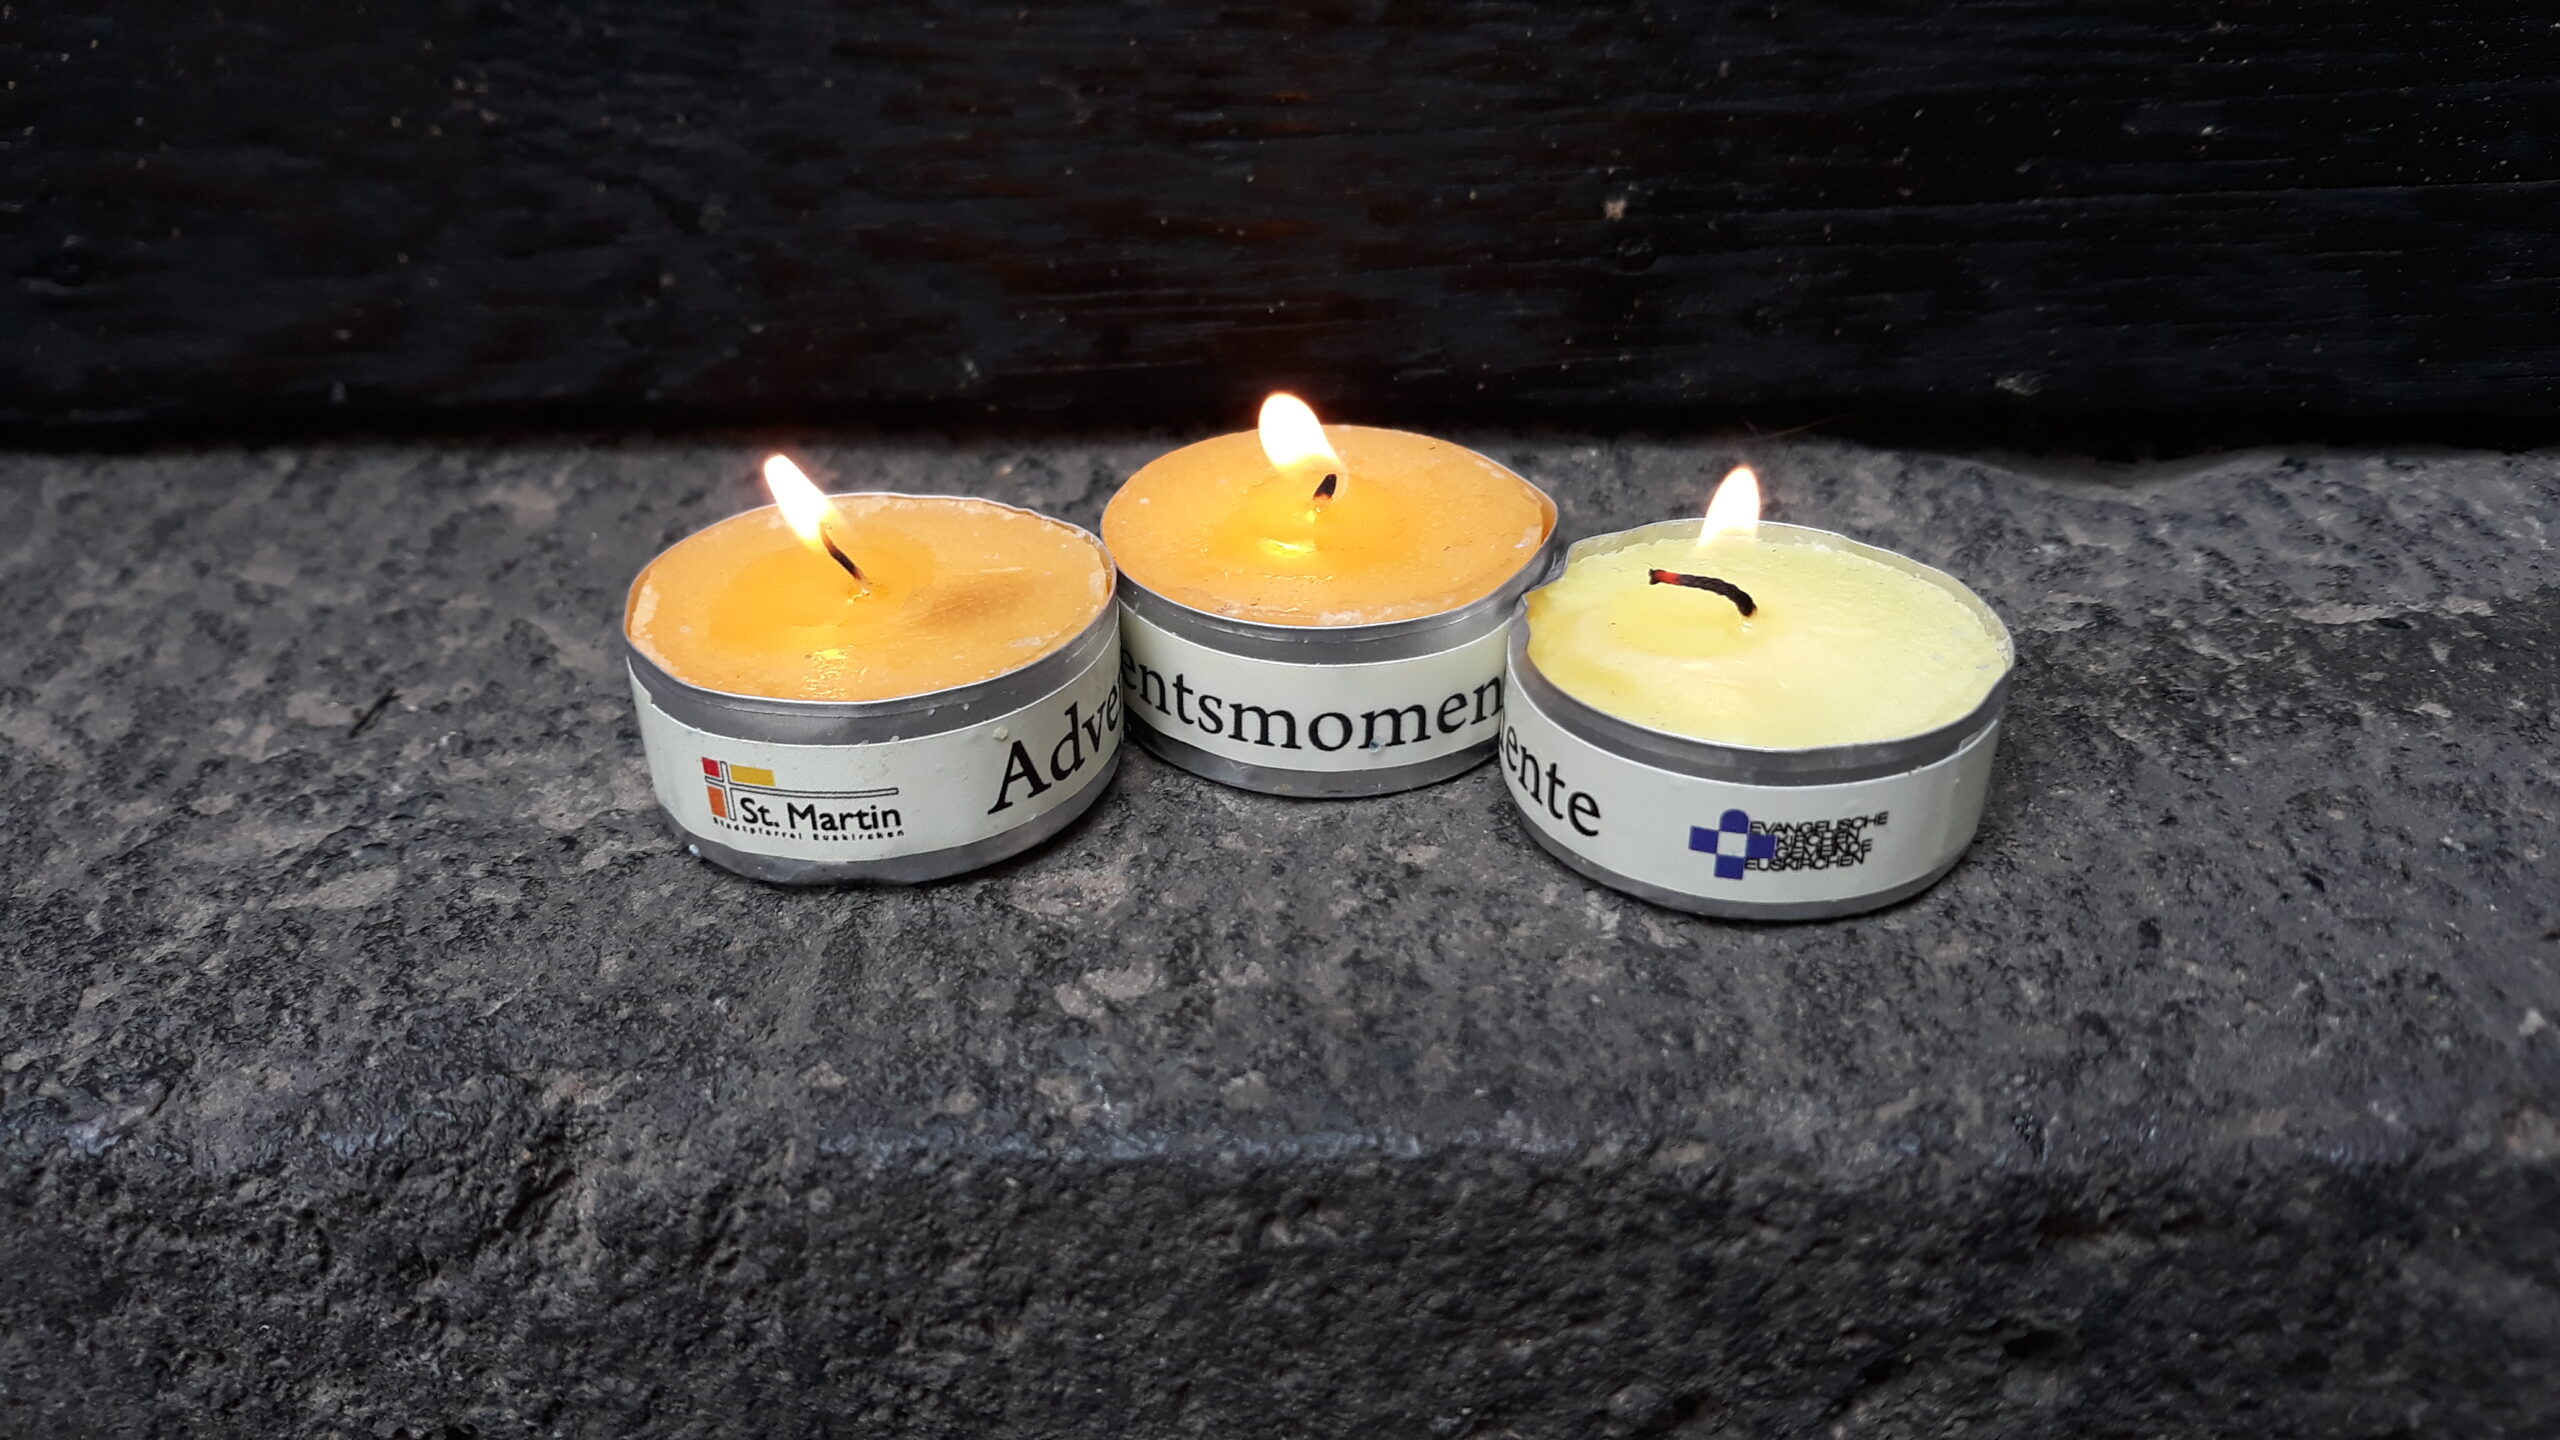 Drei Kerzen der Aktion "Adventsmomente"